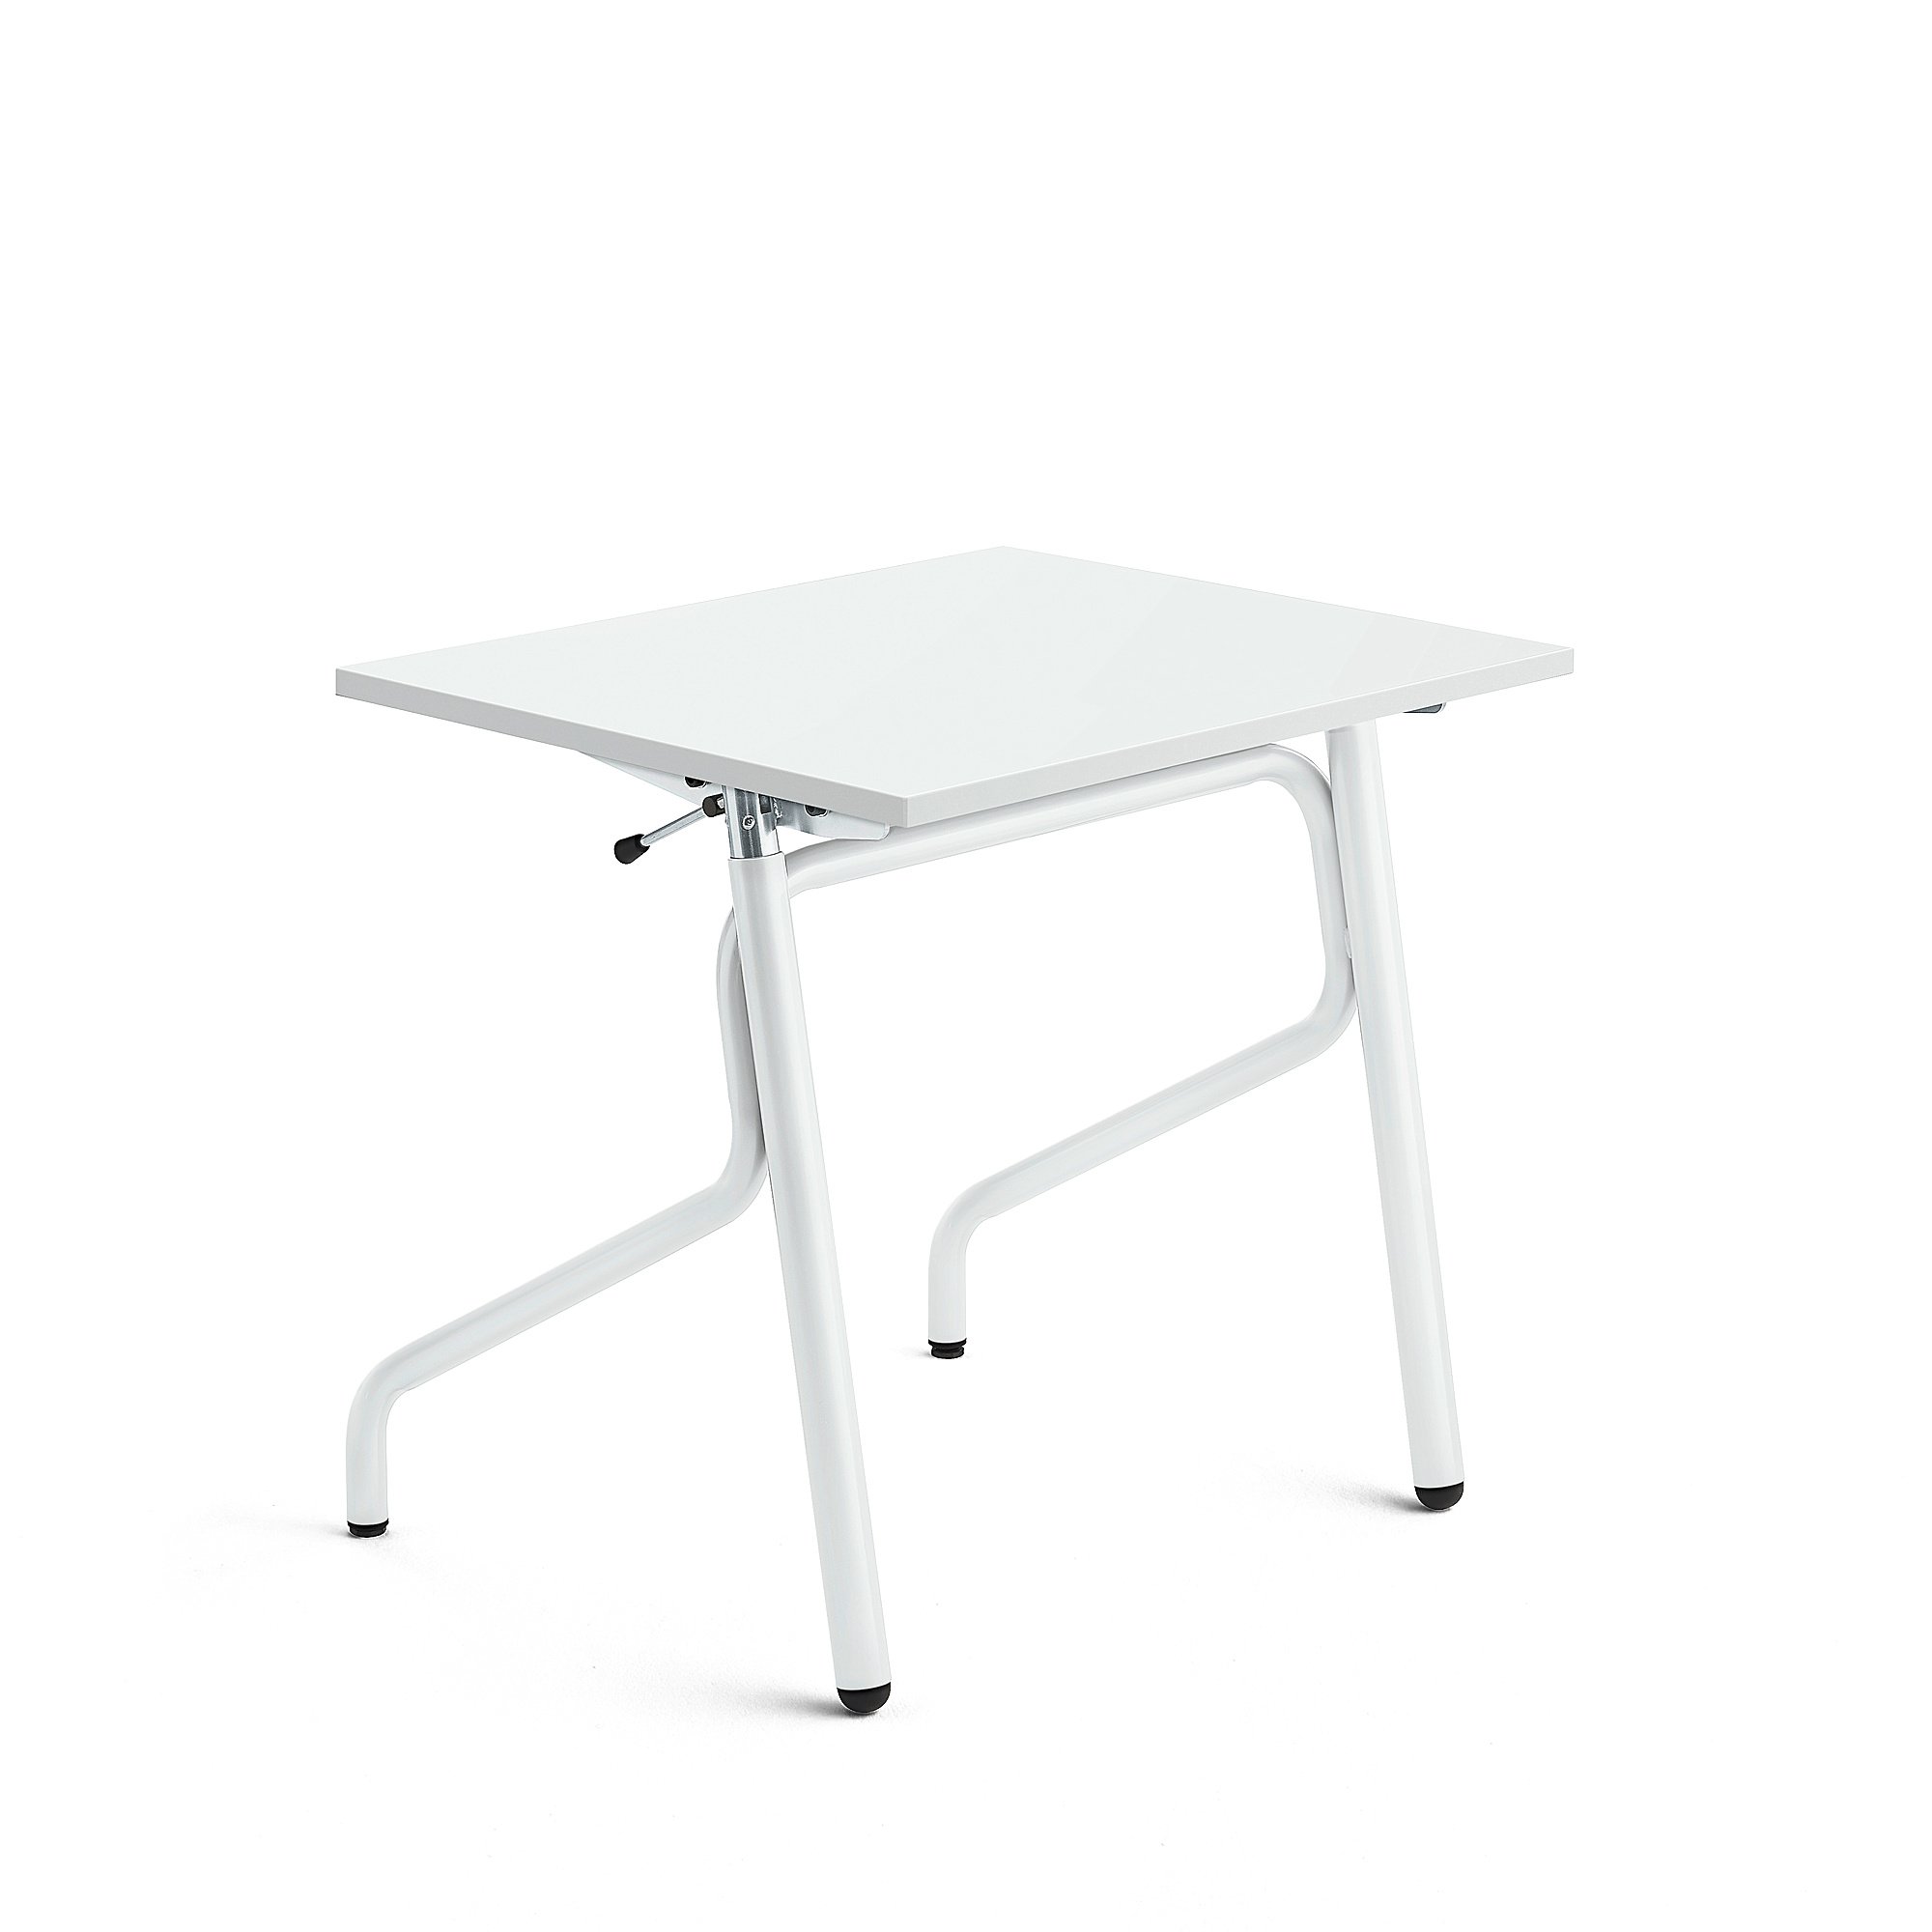 Školní lavice ADJUST, výškově nastavitelná, 700x600 mm, HPL deska, bílá, bílá